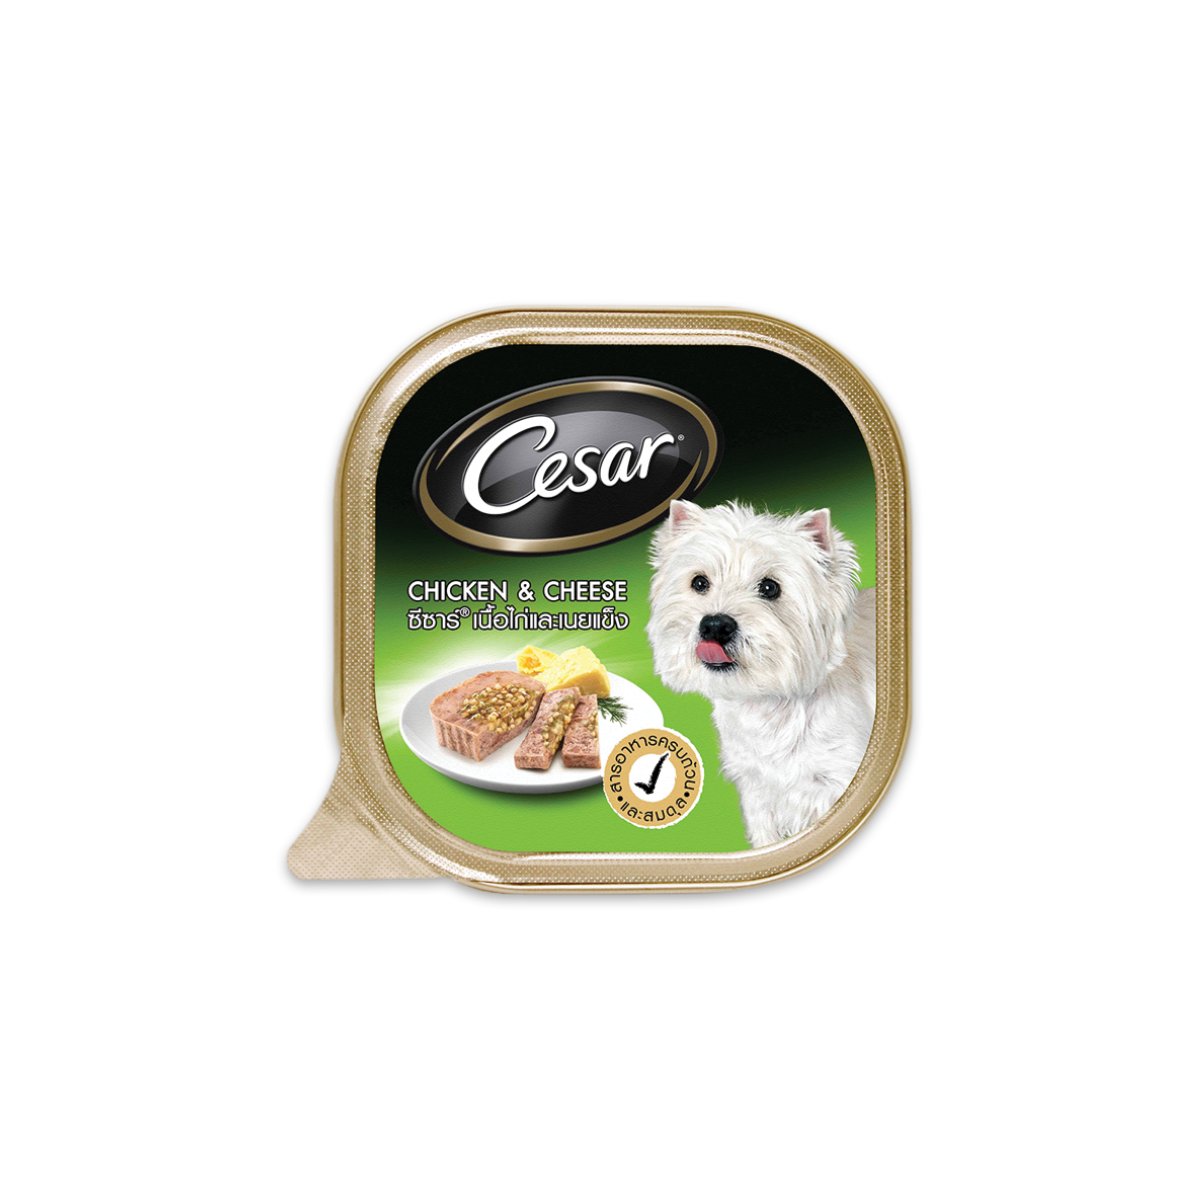 Cesar Tray ซีซาร์ อาหารเปียกสุนัขแบบถาด รสเนื้อไก่และเนยแข็ง ขนาด 100 กรัม (24 ถาด)